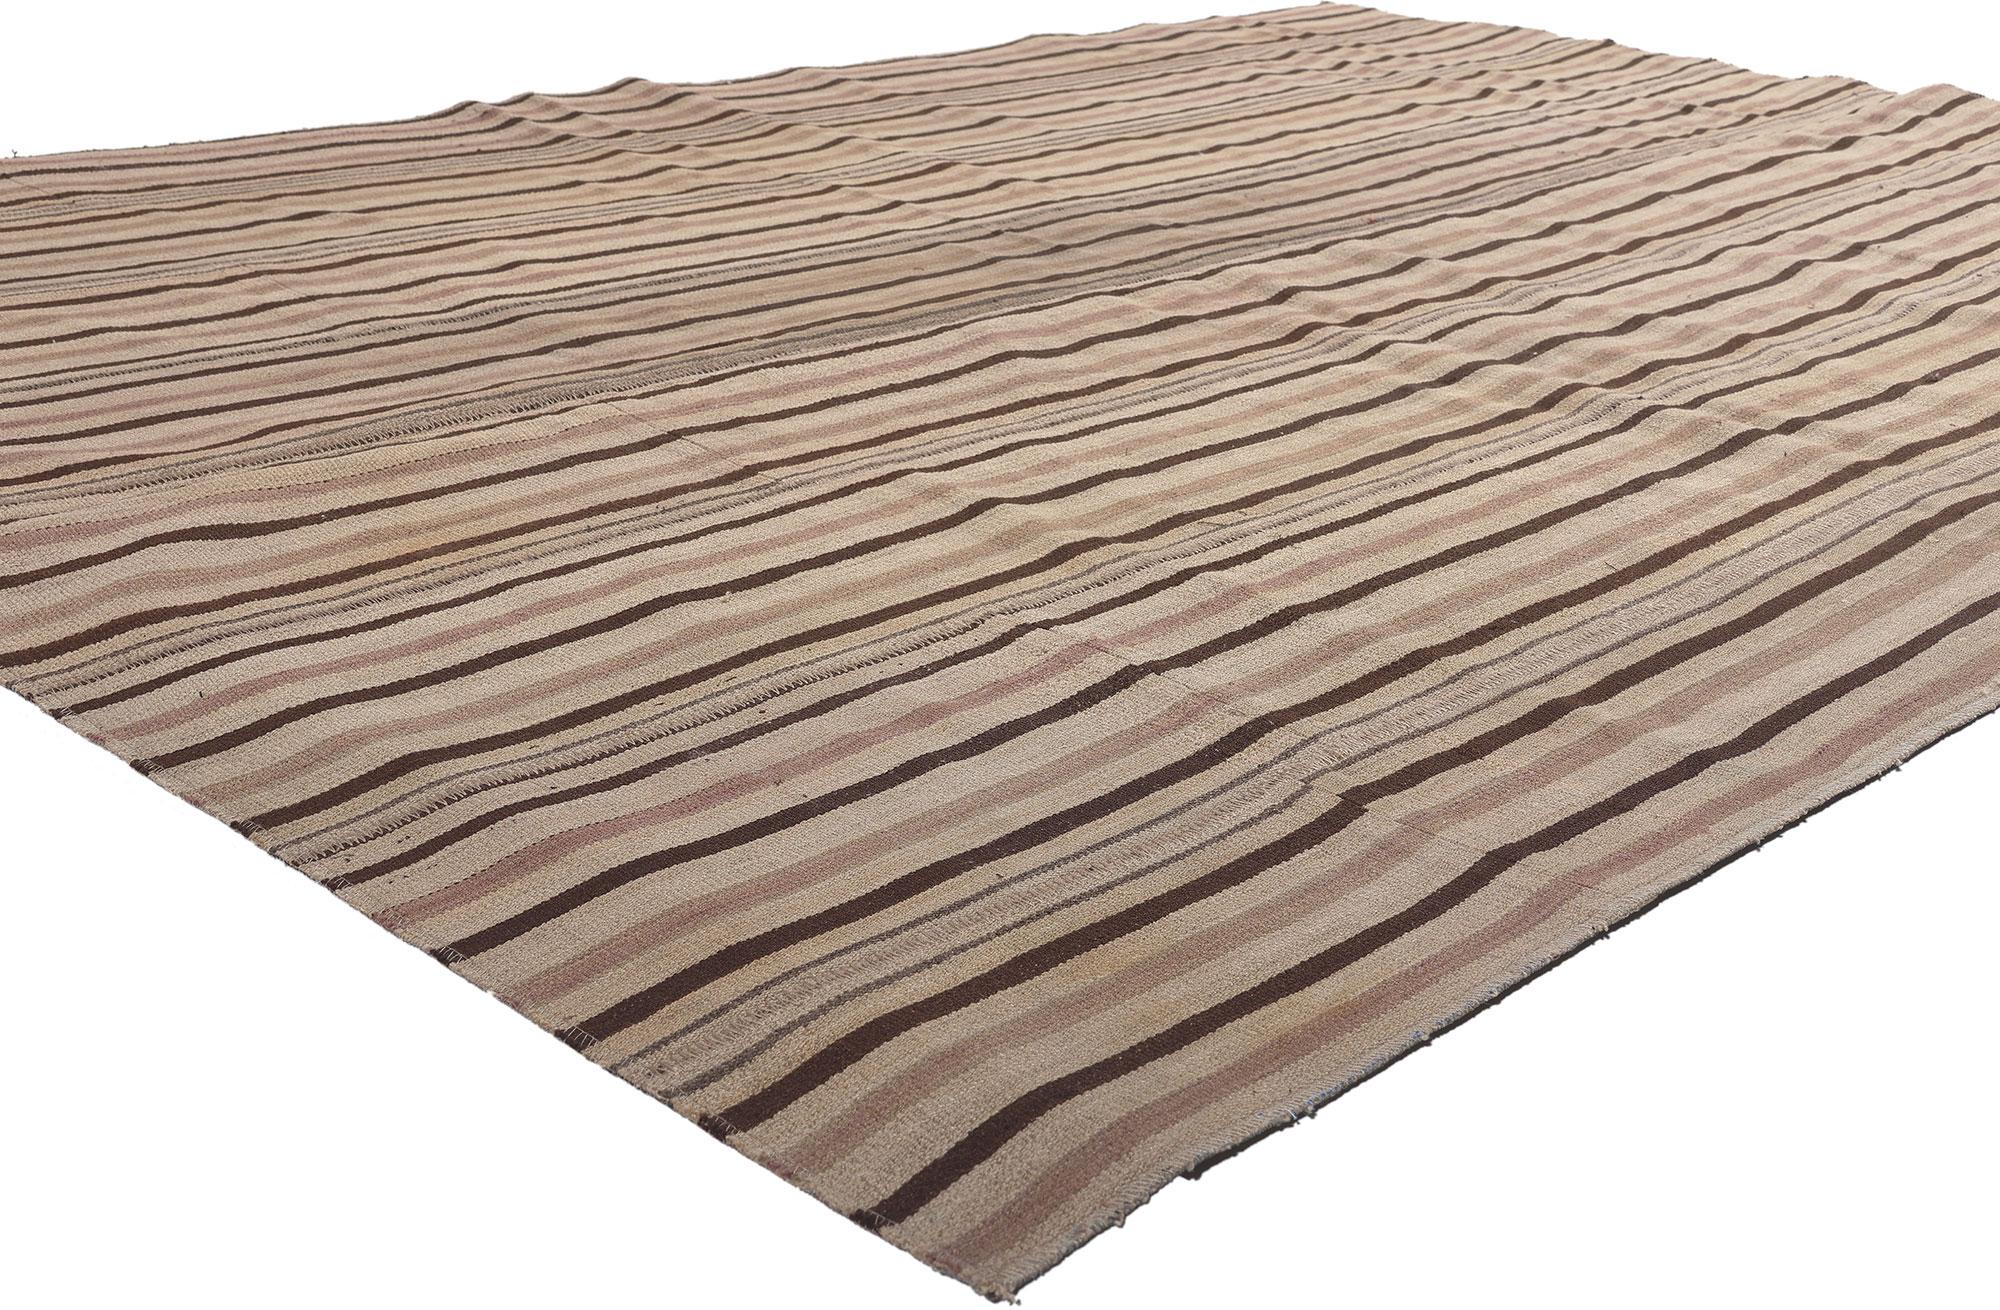 60802 Vintage Turkish Neutral Striped Kilim Rug, 06'07 x 09'07. Ce tapis kilim vintage turc rayé, tissé à la main en laine, confère une grâce Wabi-Sabi à l'élégance des tons de terre. Il associe harmonieusement le style moderne à la beauté rustique.